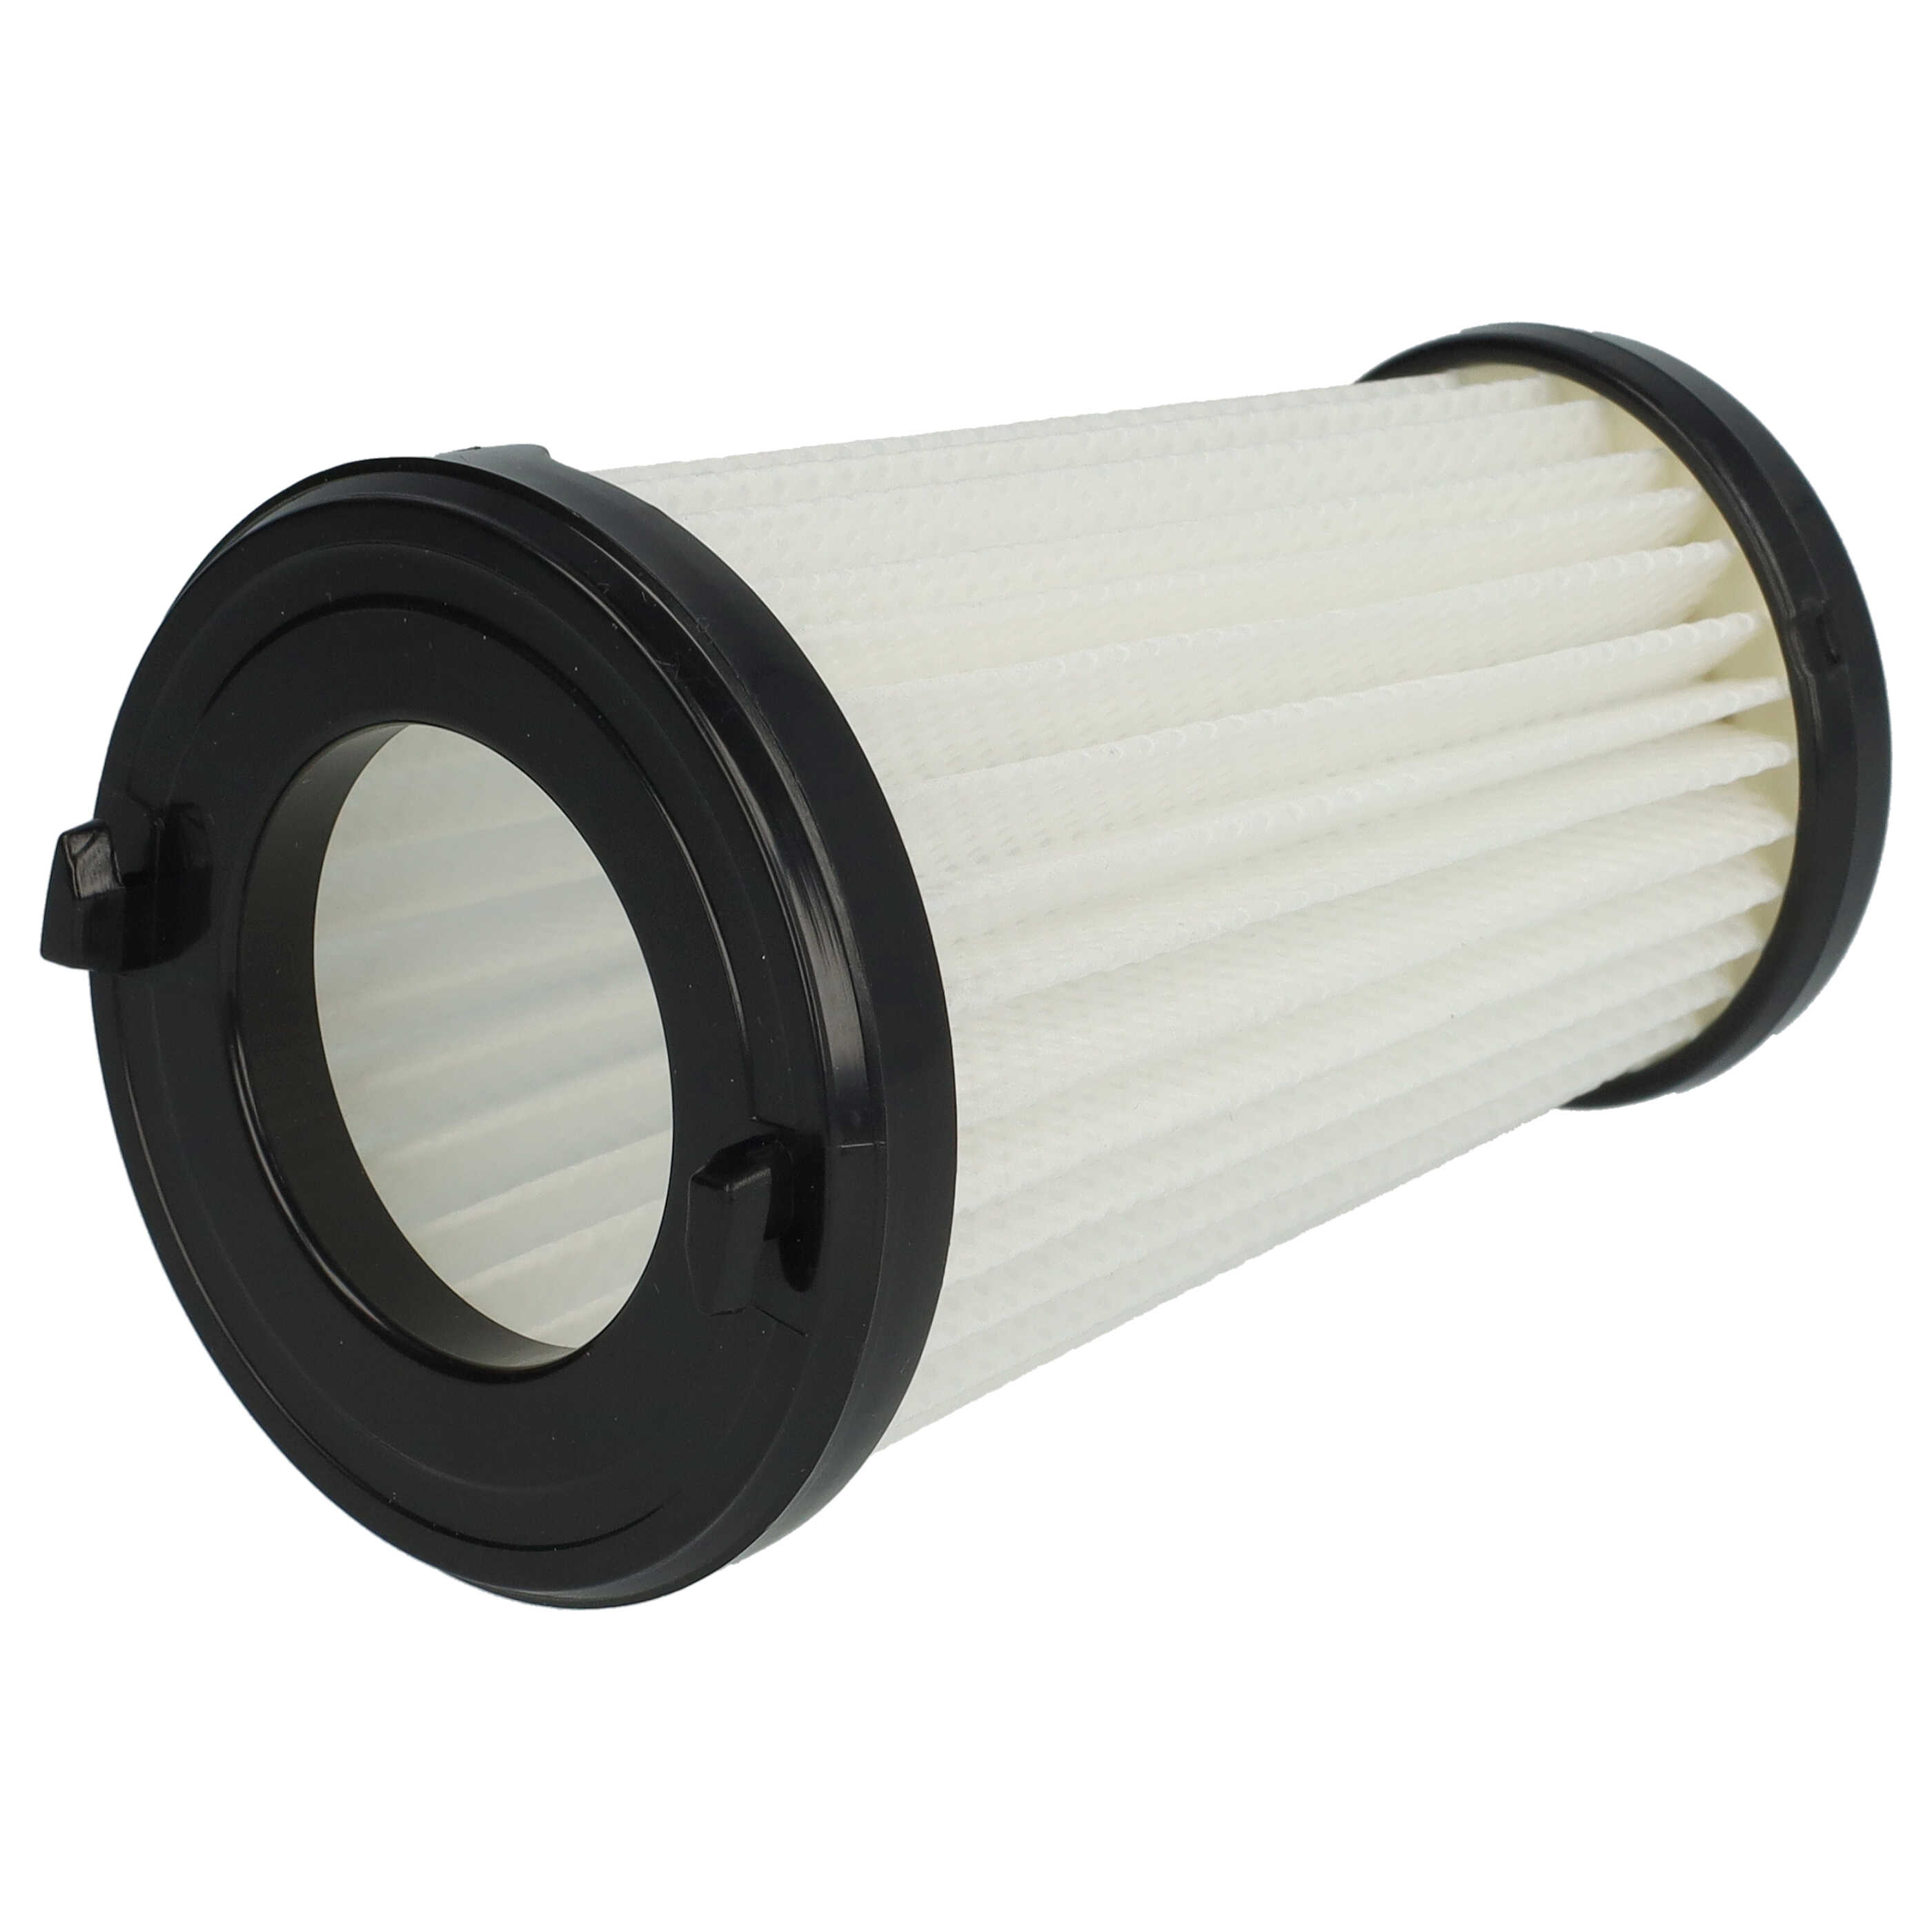 Filtr do odkurzacza Electrolux zamiennik AEG AEF150, 9001683755, 90094073100 - filtr lamelowy, czarny / biały